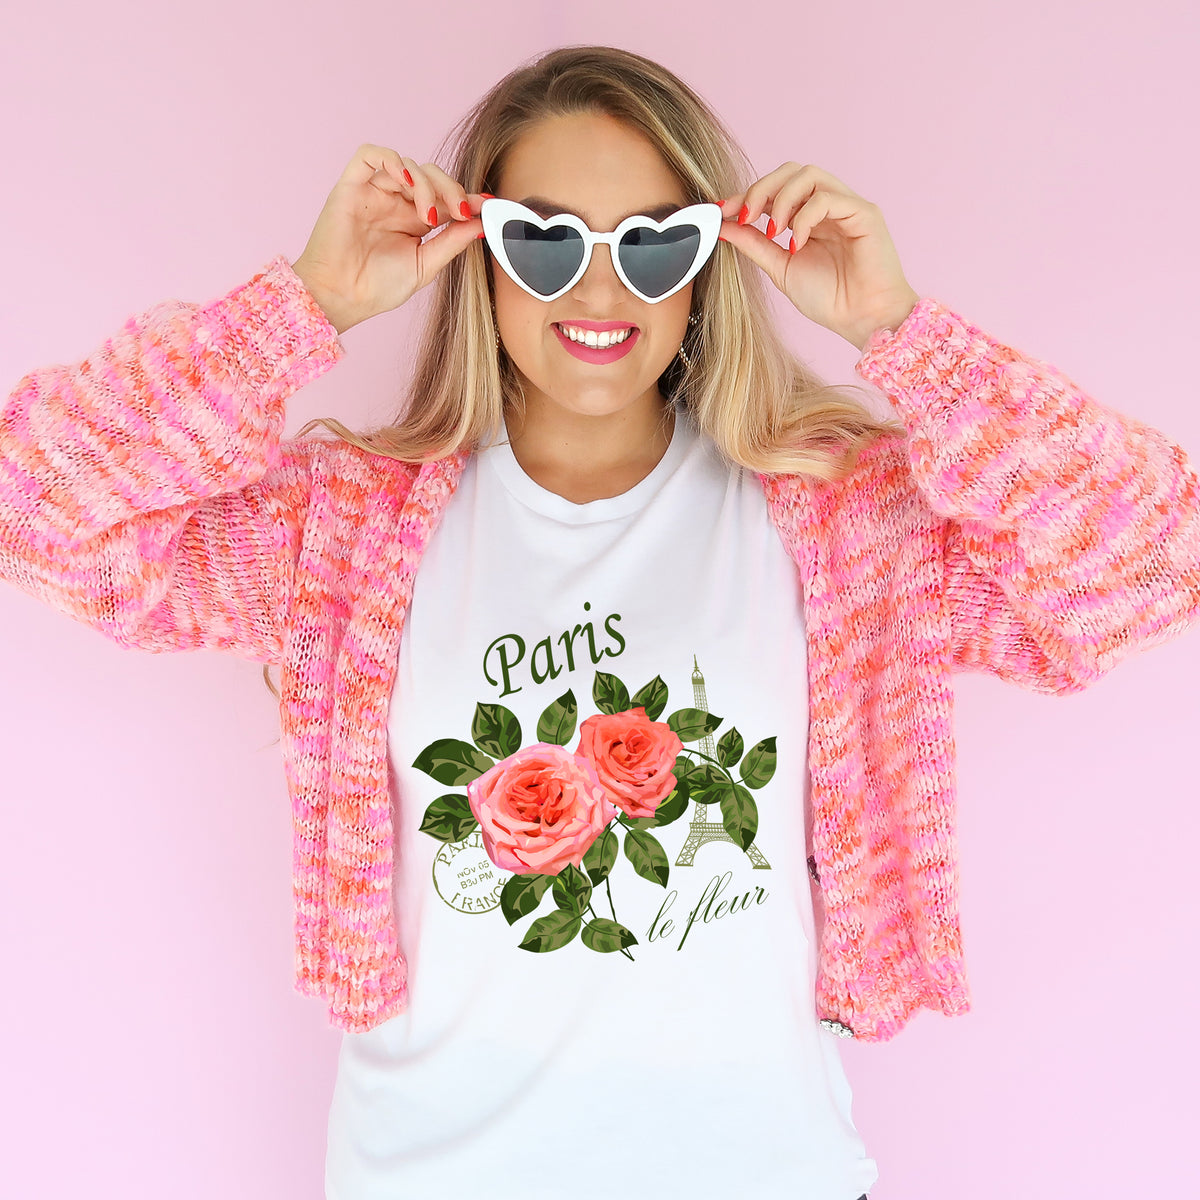 Paris France Vintage Rose Shirt | World Traveler Gardening Gift | White Unisex Jersey T-shirt